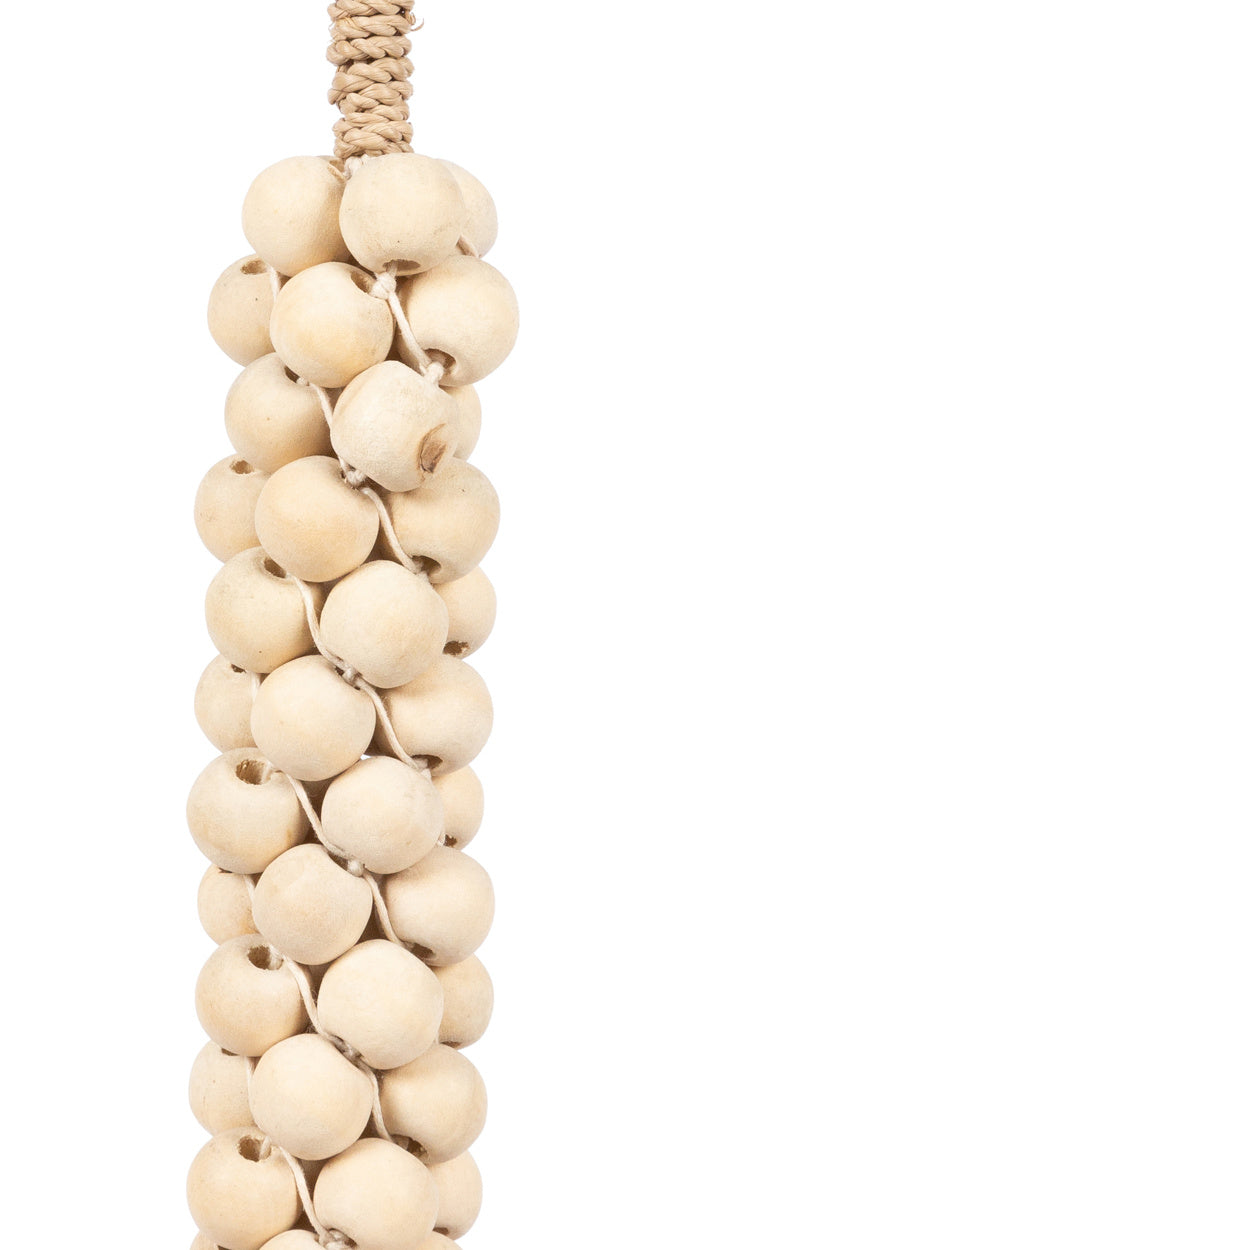 de wooden beads met katoen hangdecoratie - wit